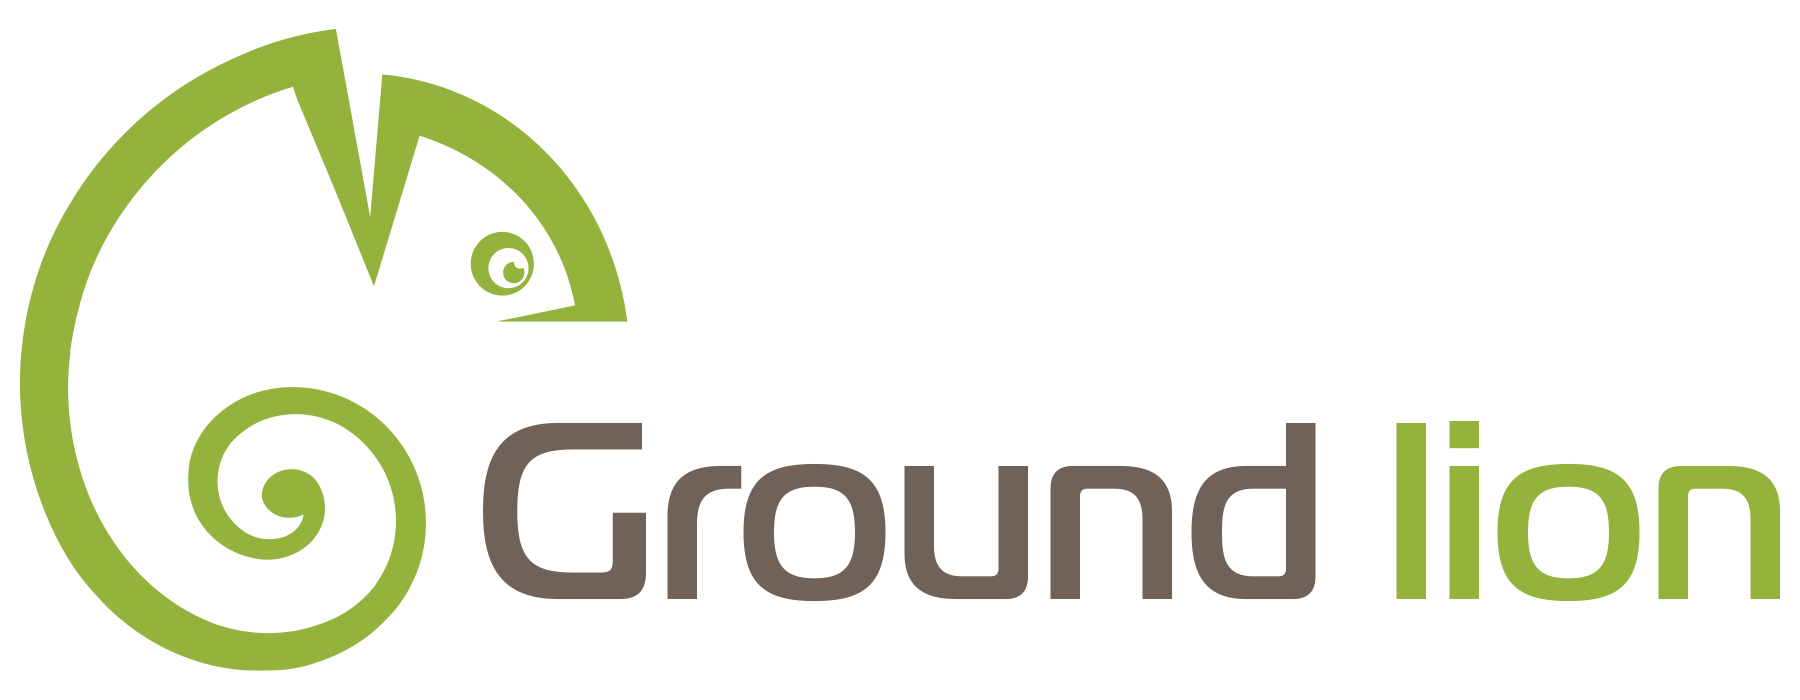 Ground lion logo